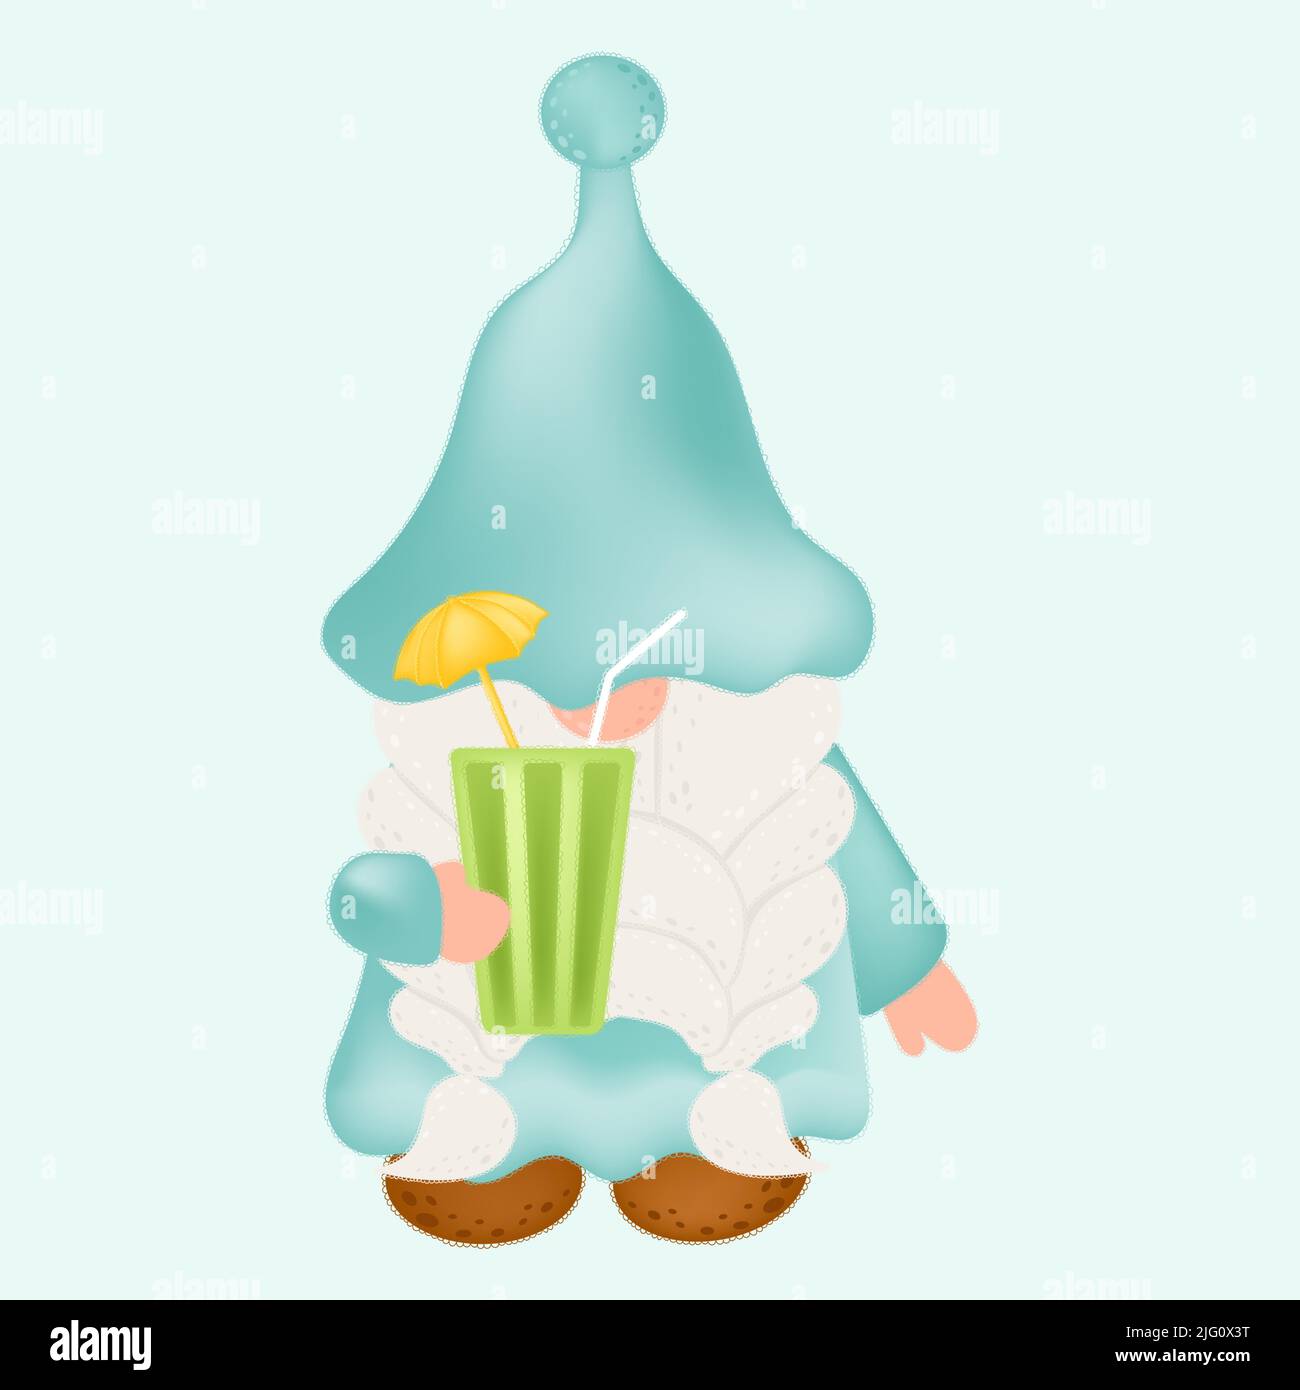 GNOME Clipart dans un joli dessin de dessin joli clip Art Gnome avec limonade d'été. Illustration vectorielle d'un personnage pour les imprimés pour vêtements, autocollants Illustration de Vecteur